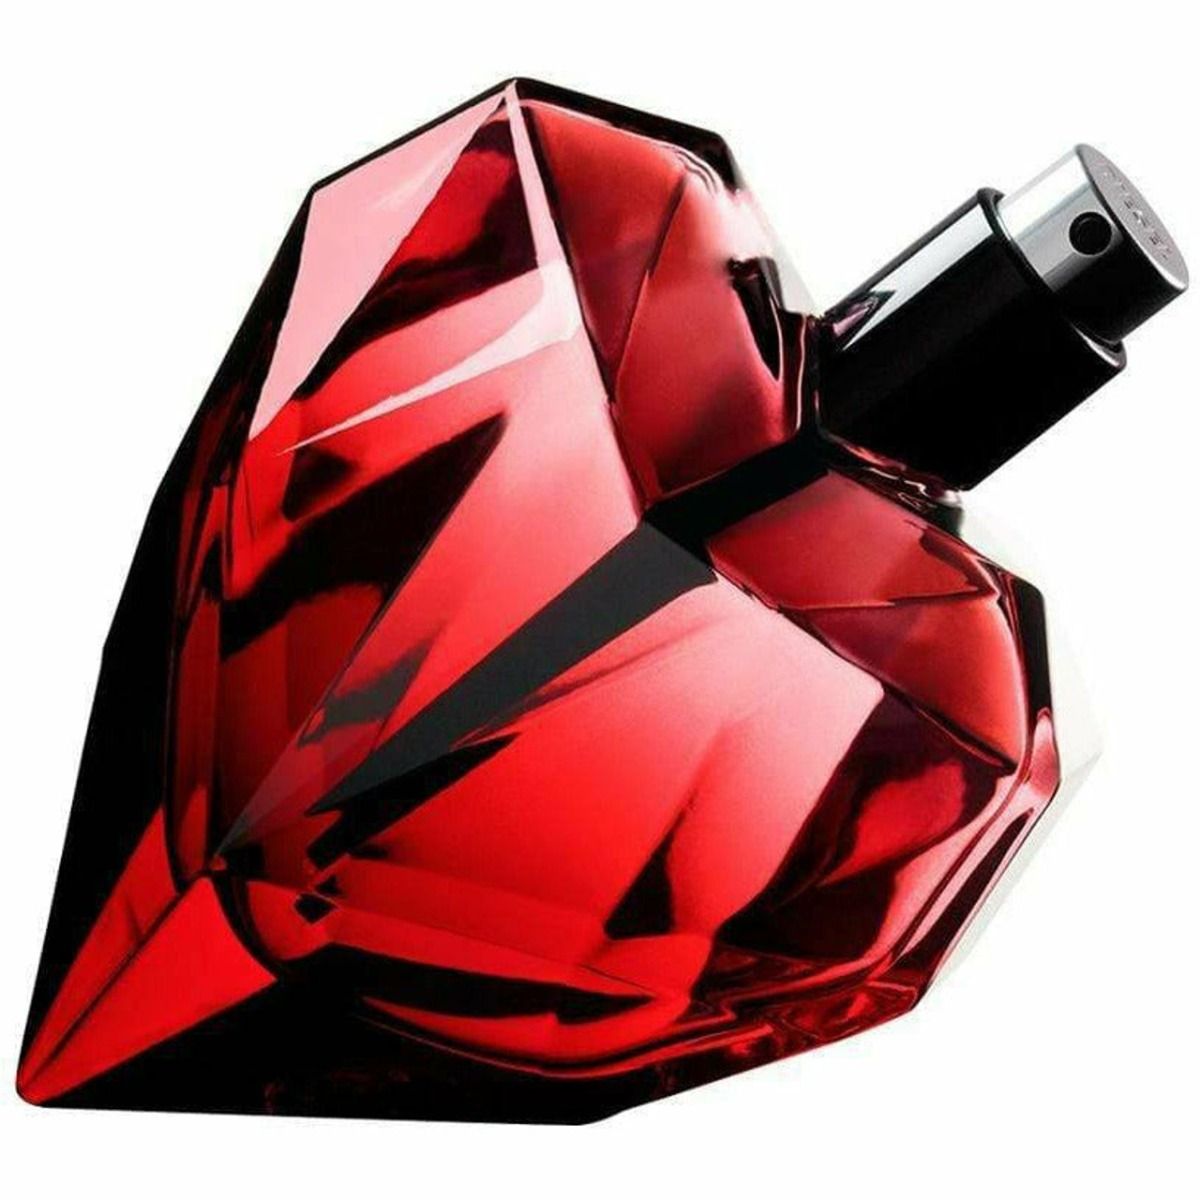 Diesel Loverdose Red Kiss парфюмерная вода для женщин, 50 ml женская парфюмированная вода diesel loverdose 75 мл